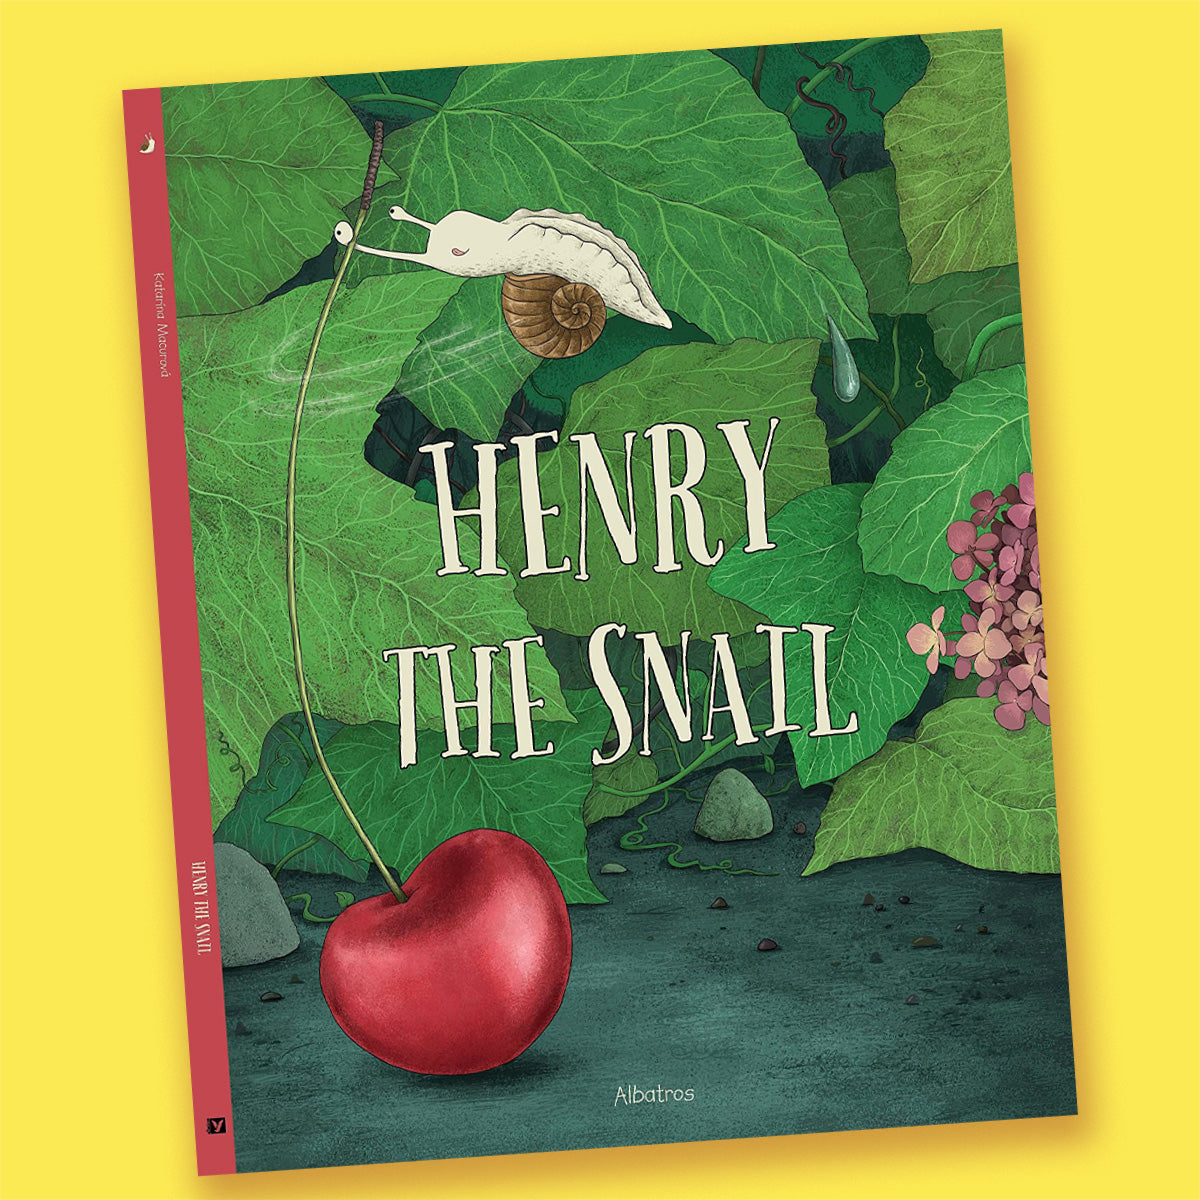 Henry the Snail by Katarina Macurova